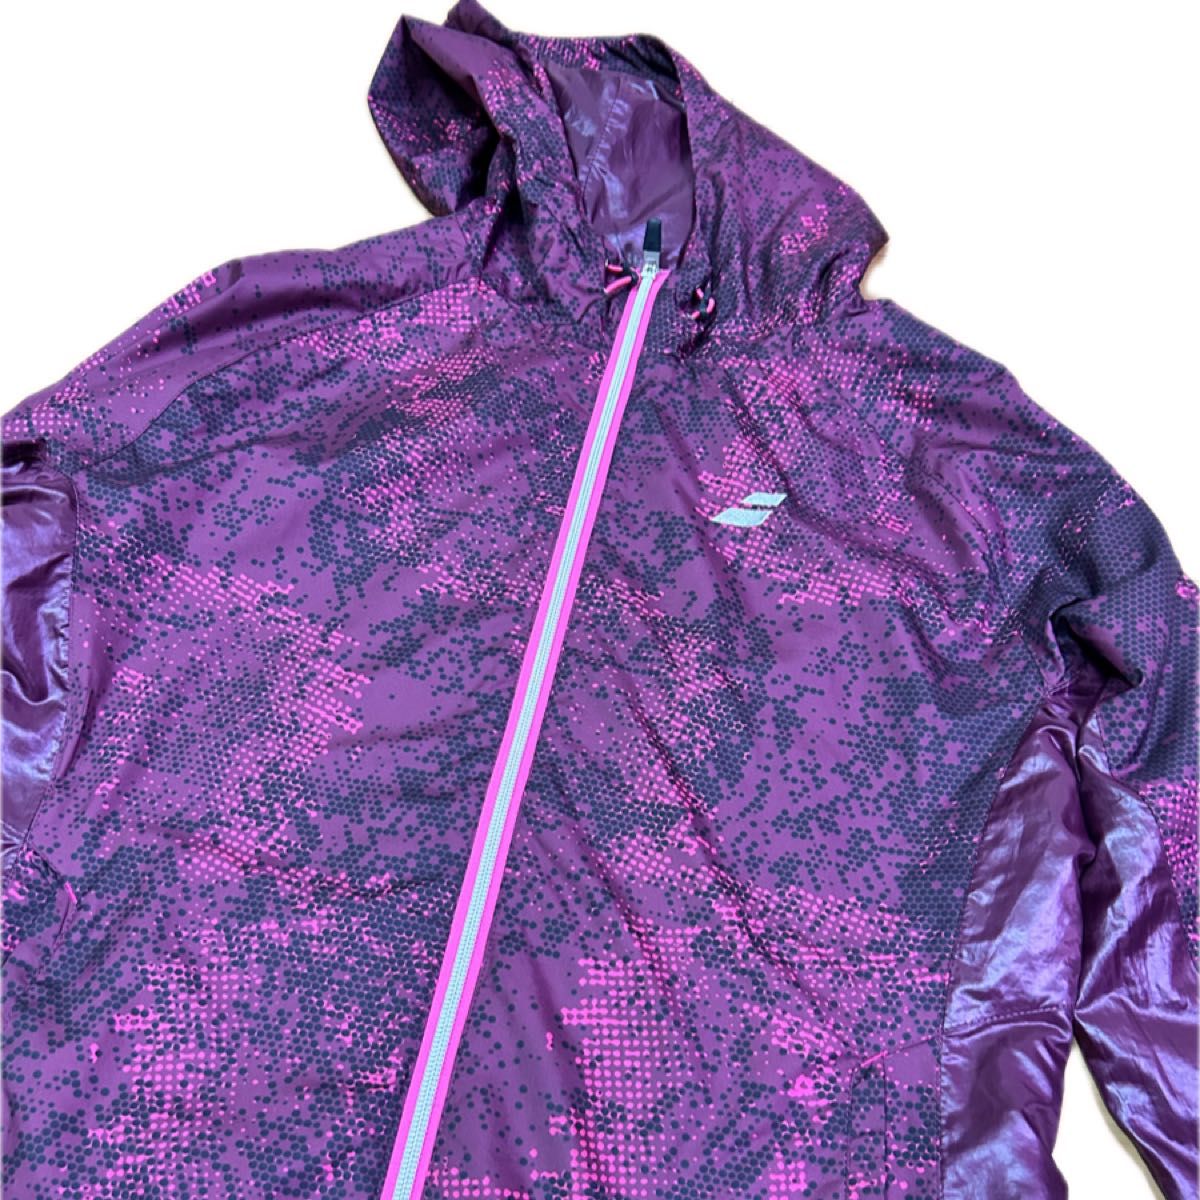 Babolat バボラ　テニス　 ナイロン　パーカー ジャケット ブルゾン　レディース　O 大きいサイズ　紫　ウインドブレーカー